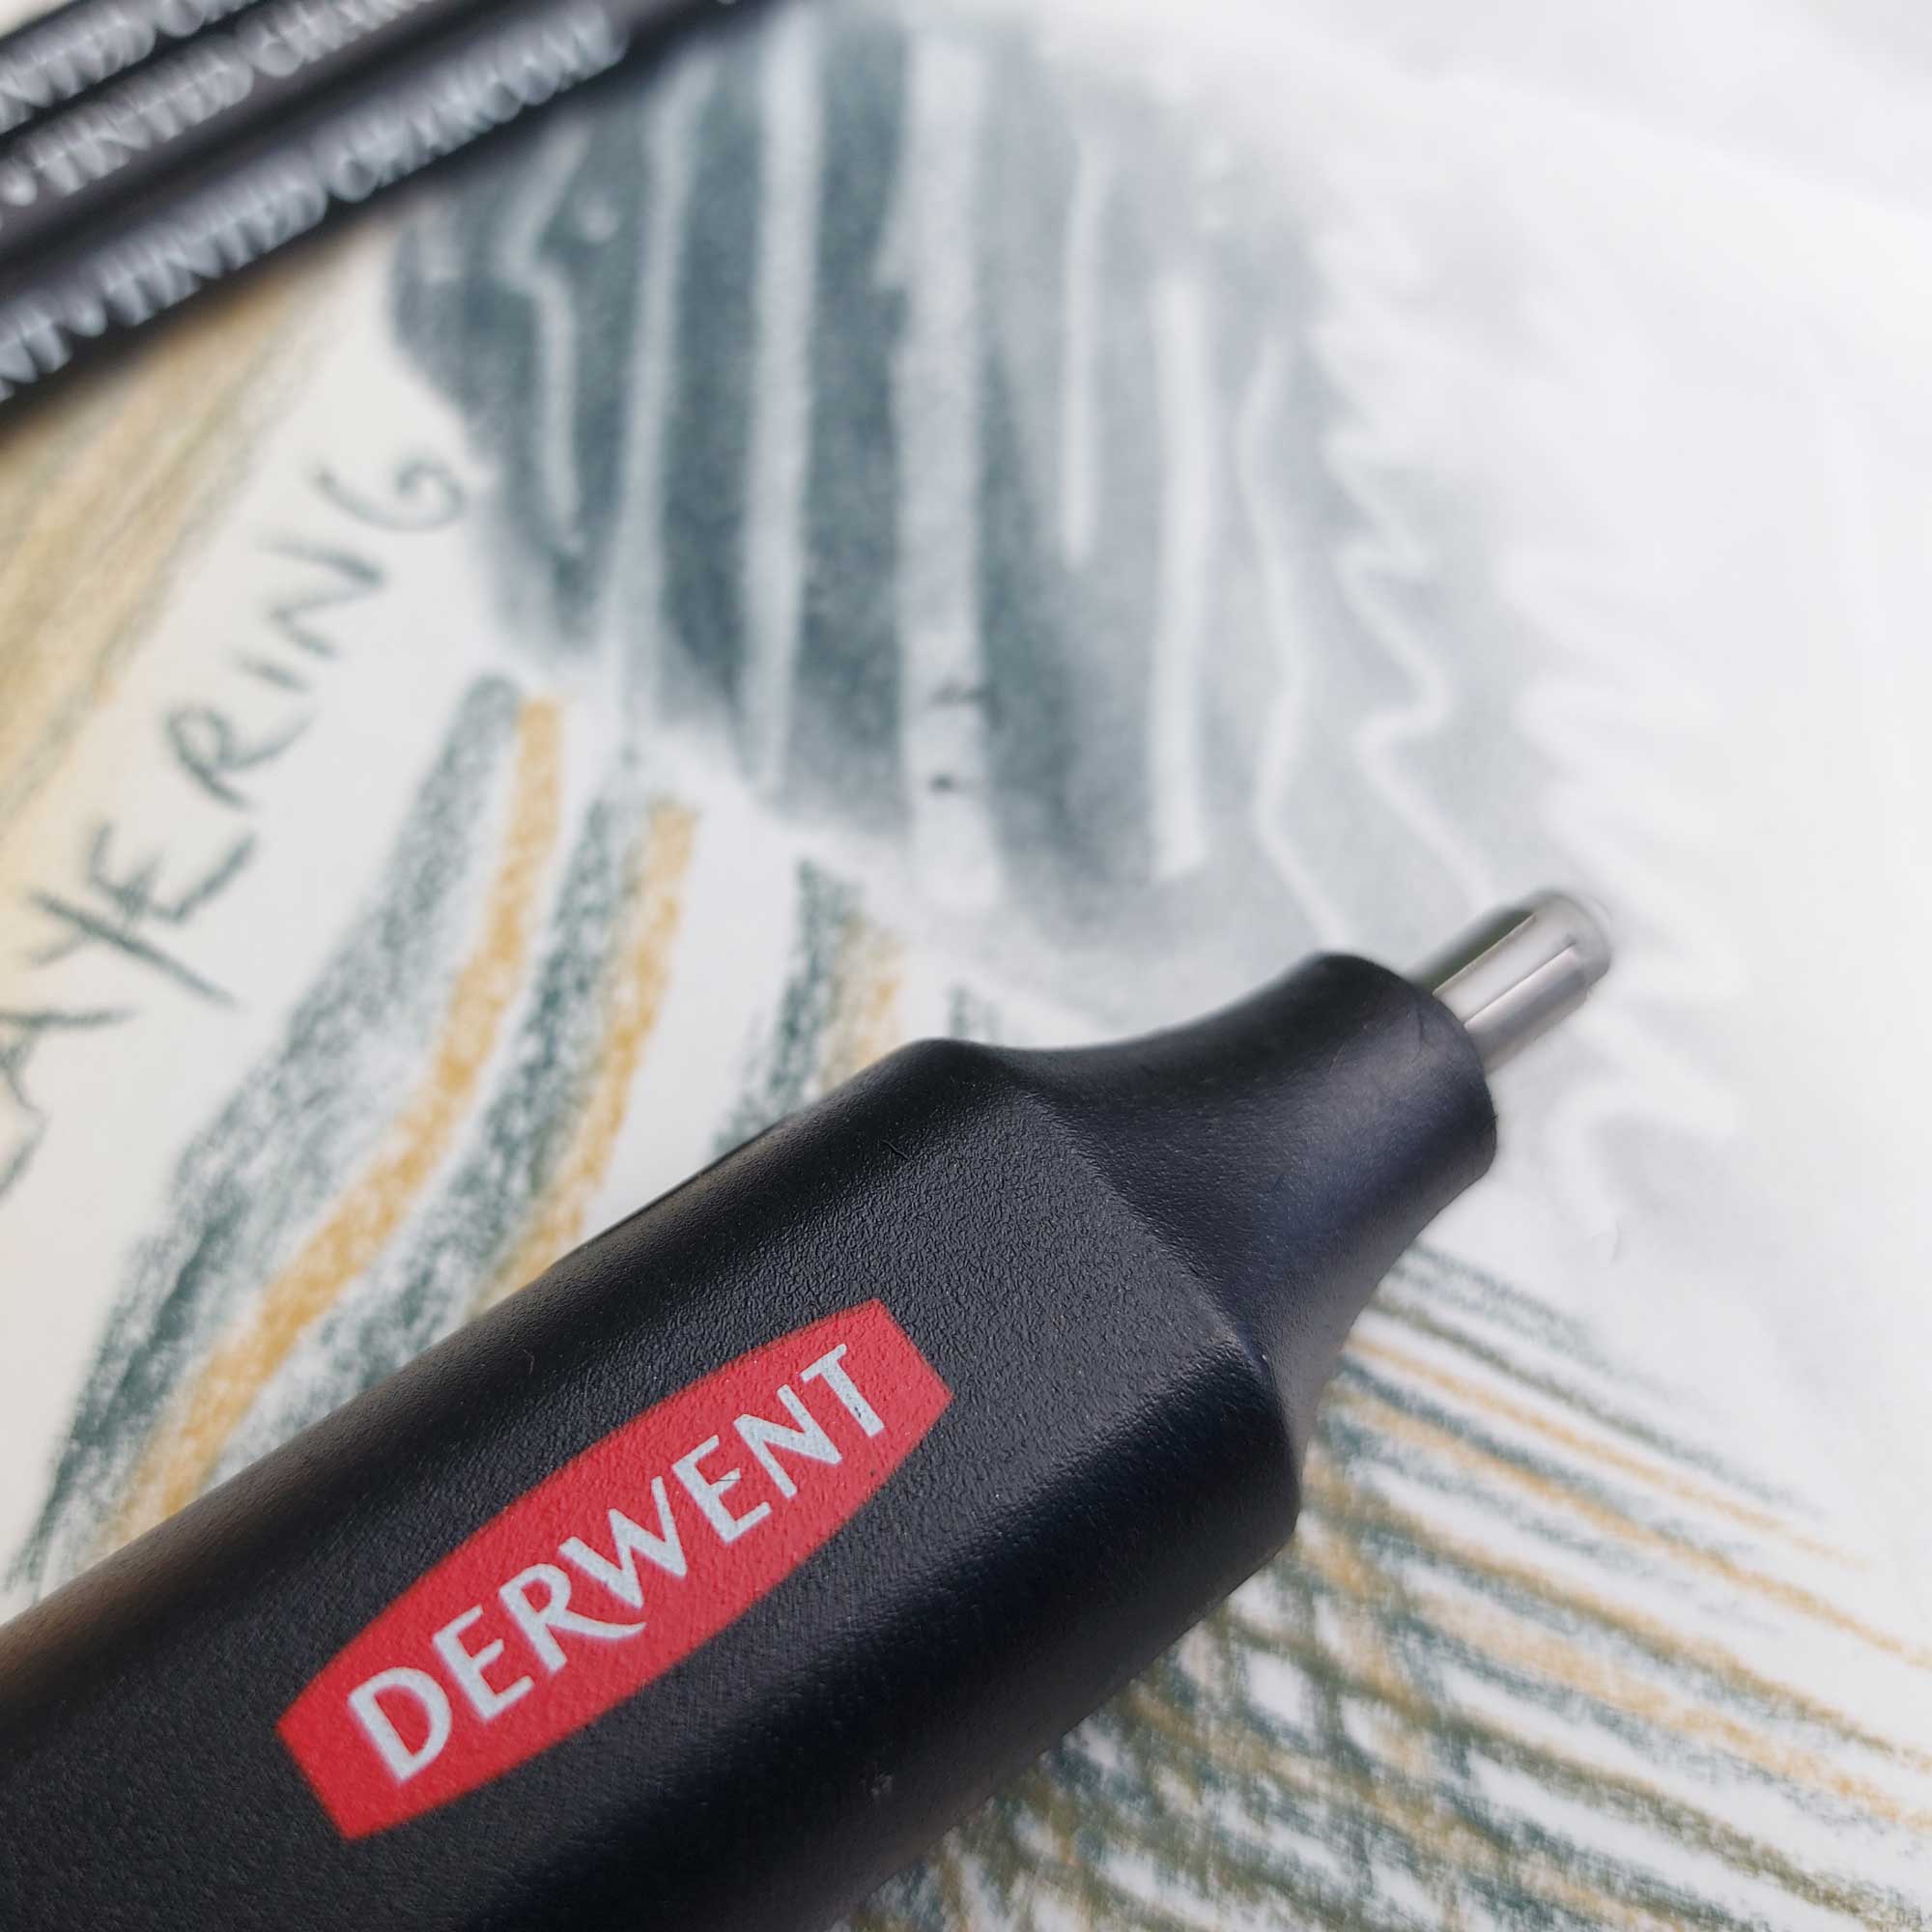 Derwent Battery Operated Eraser